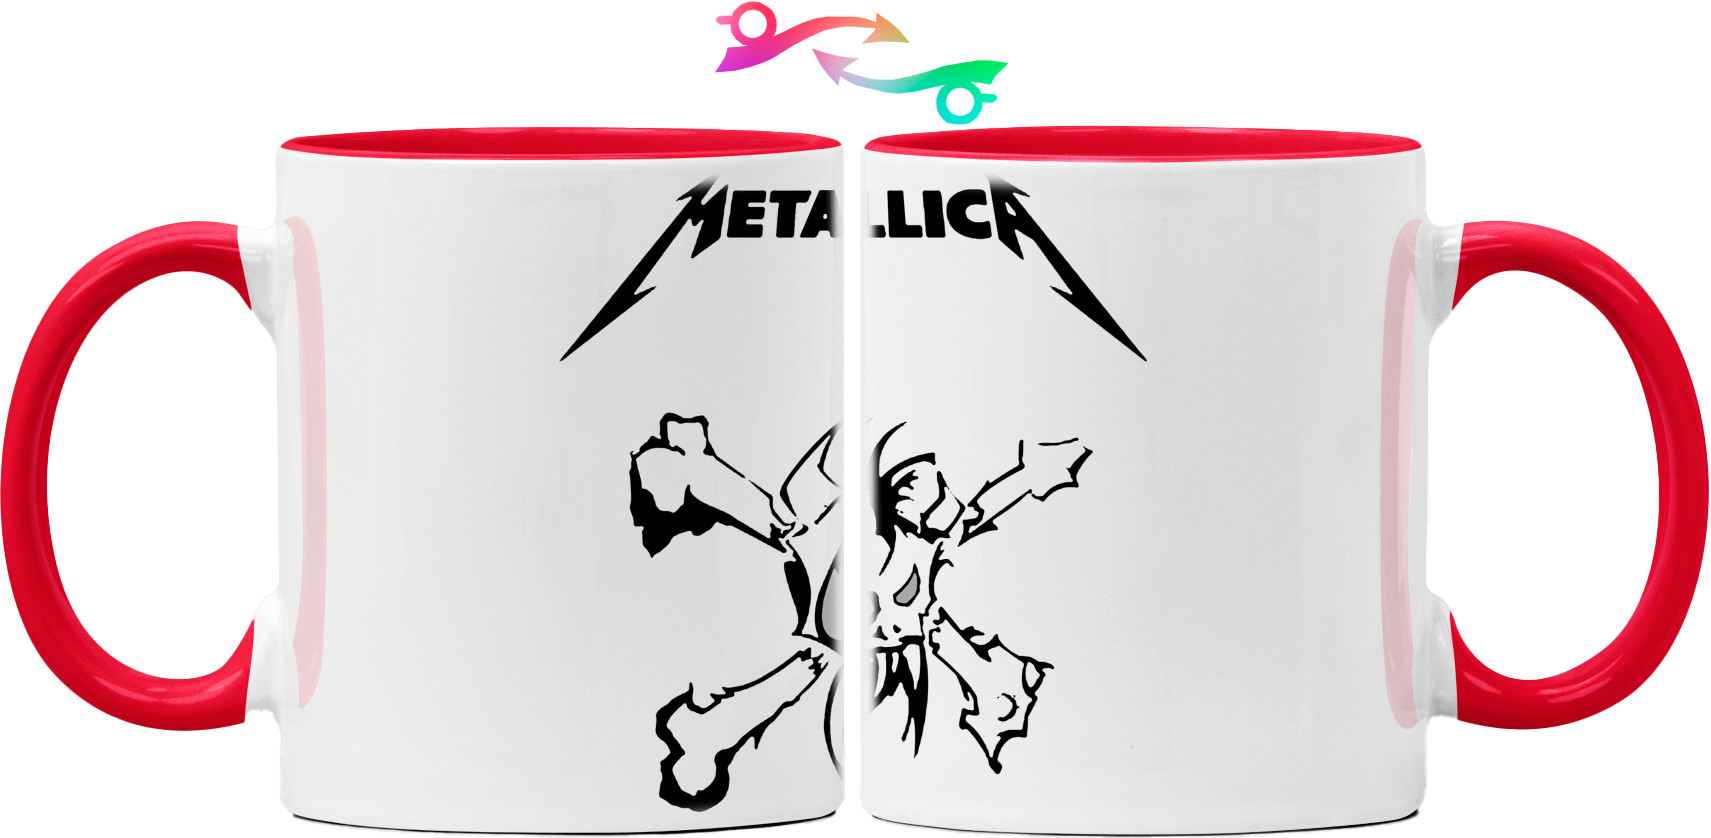 Metallica принт 6